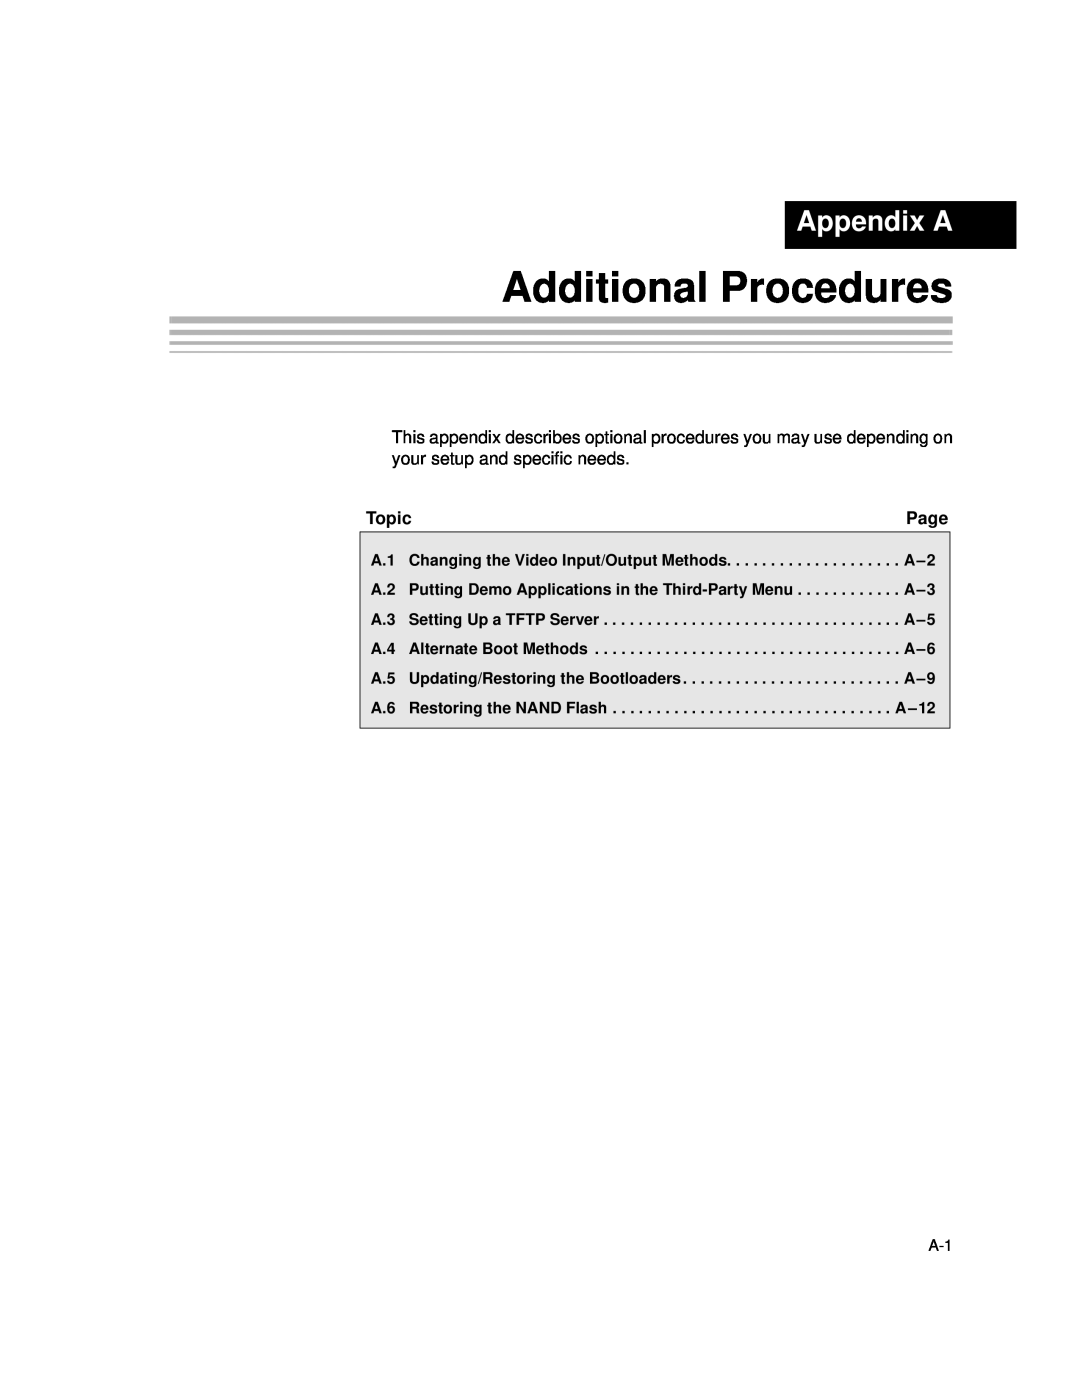 Texas Instruments TMS320DM357 DVEVM v2.05 manual Additional Procedures, Appendix A 